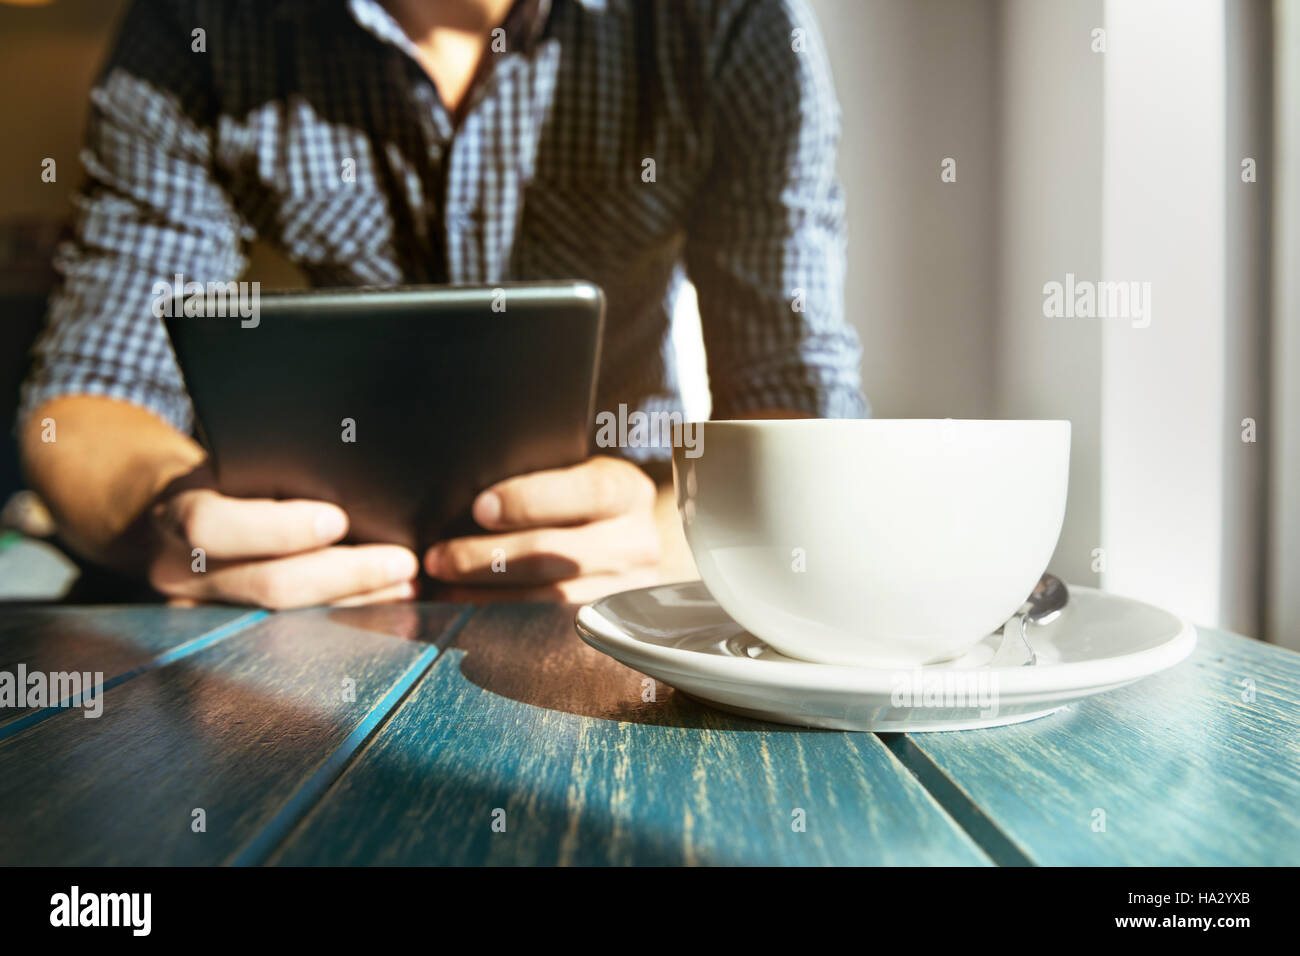 Café Café ordinateur tablette concept homme libre Banque D'Images